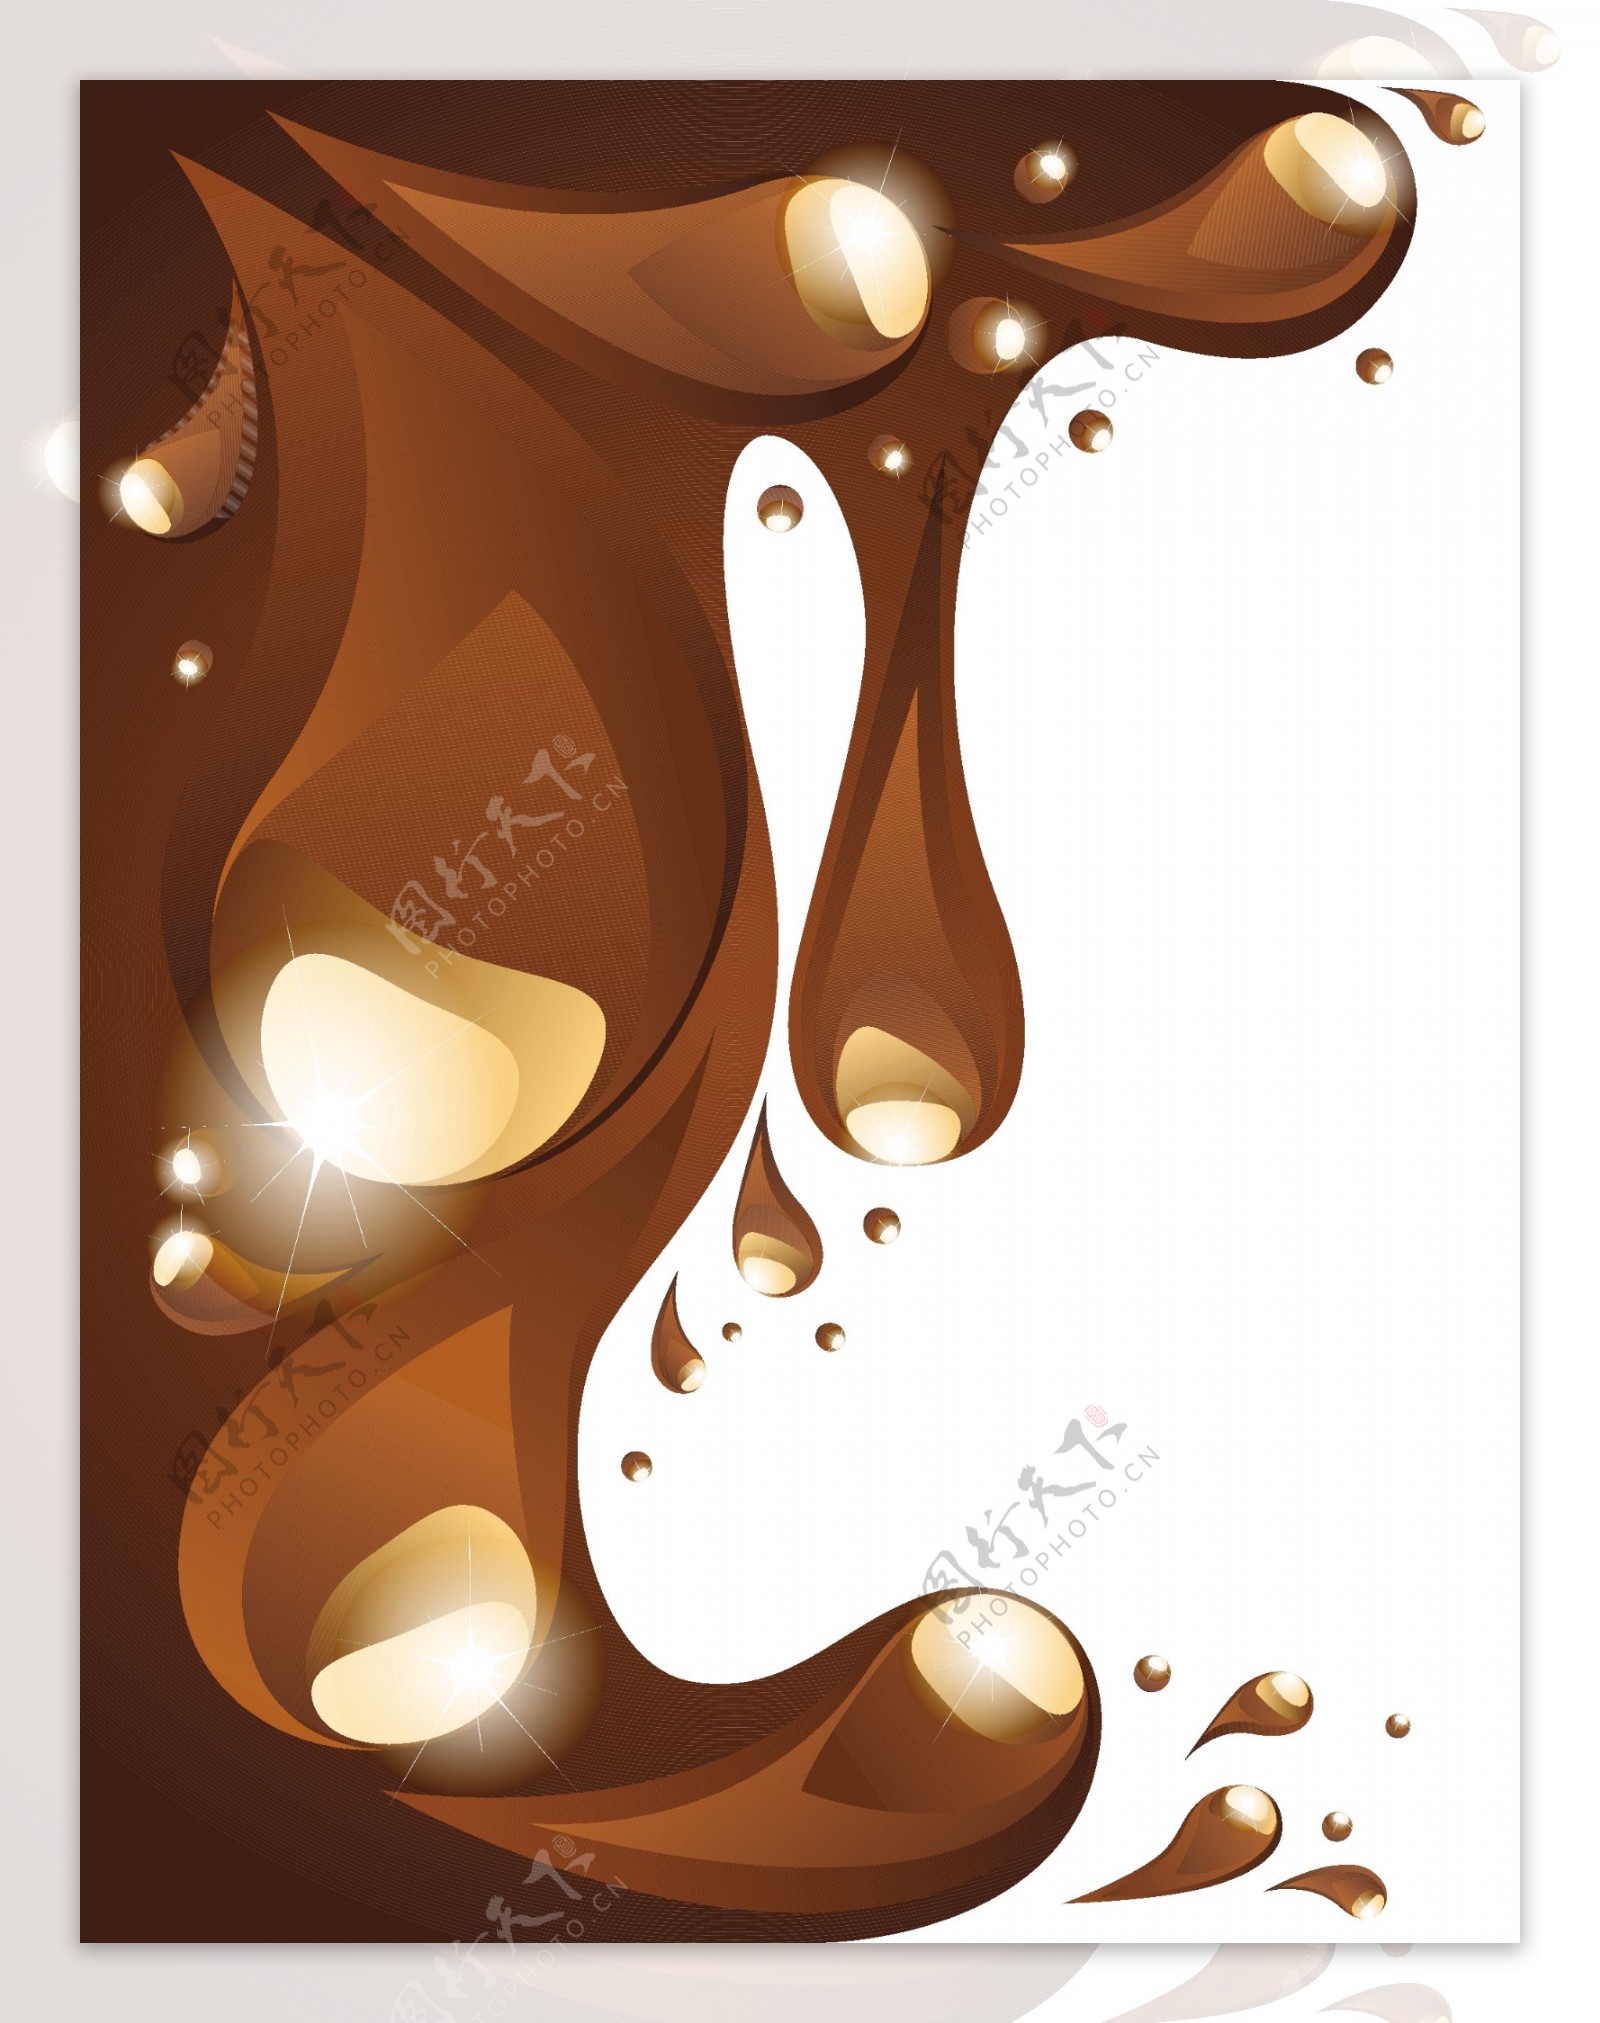 咖啡巧克力图案矢量素材